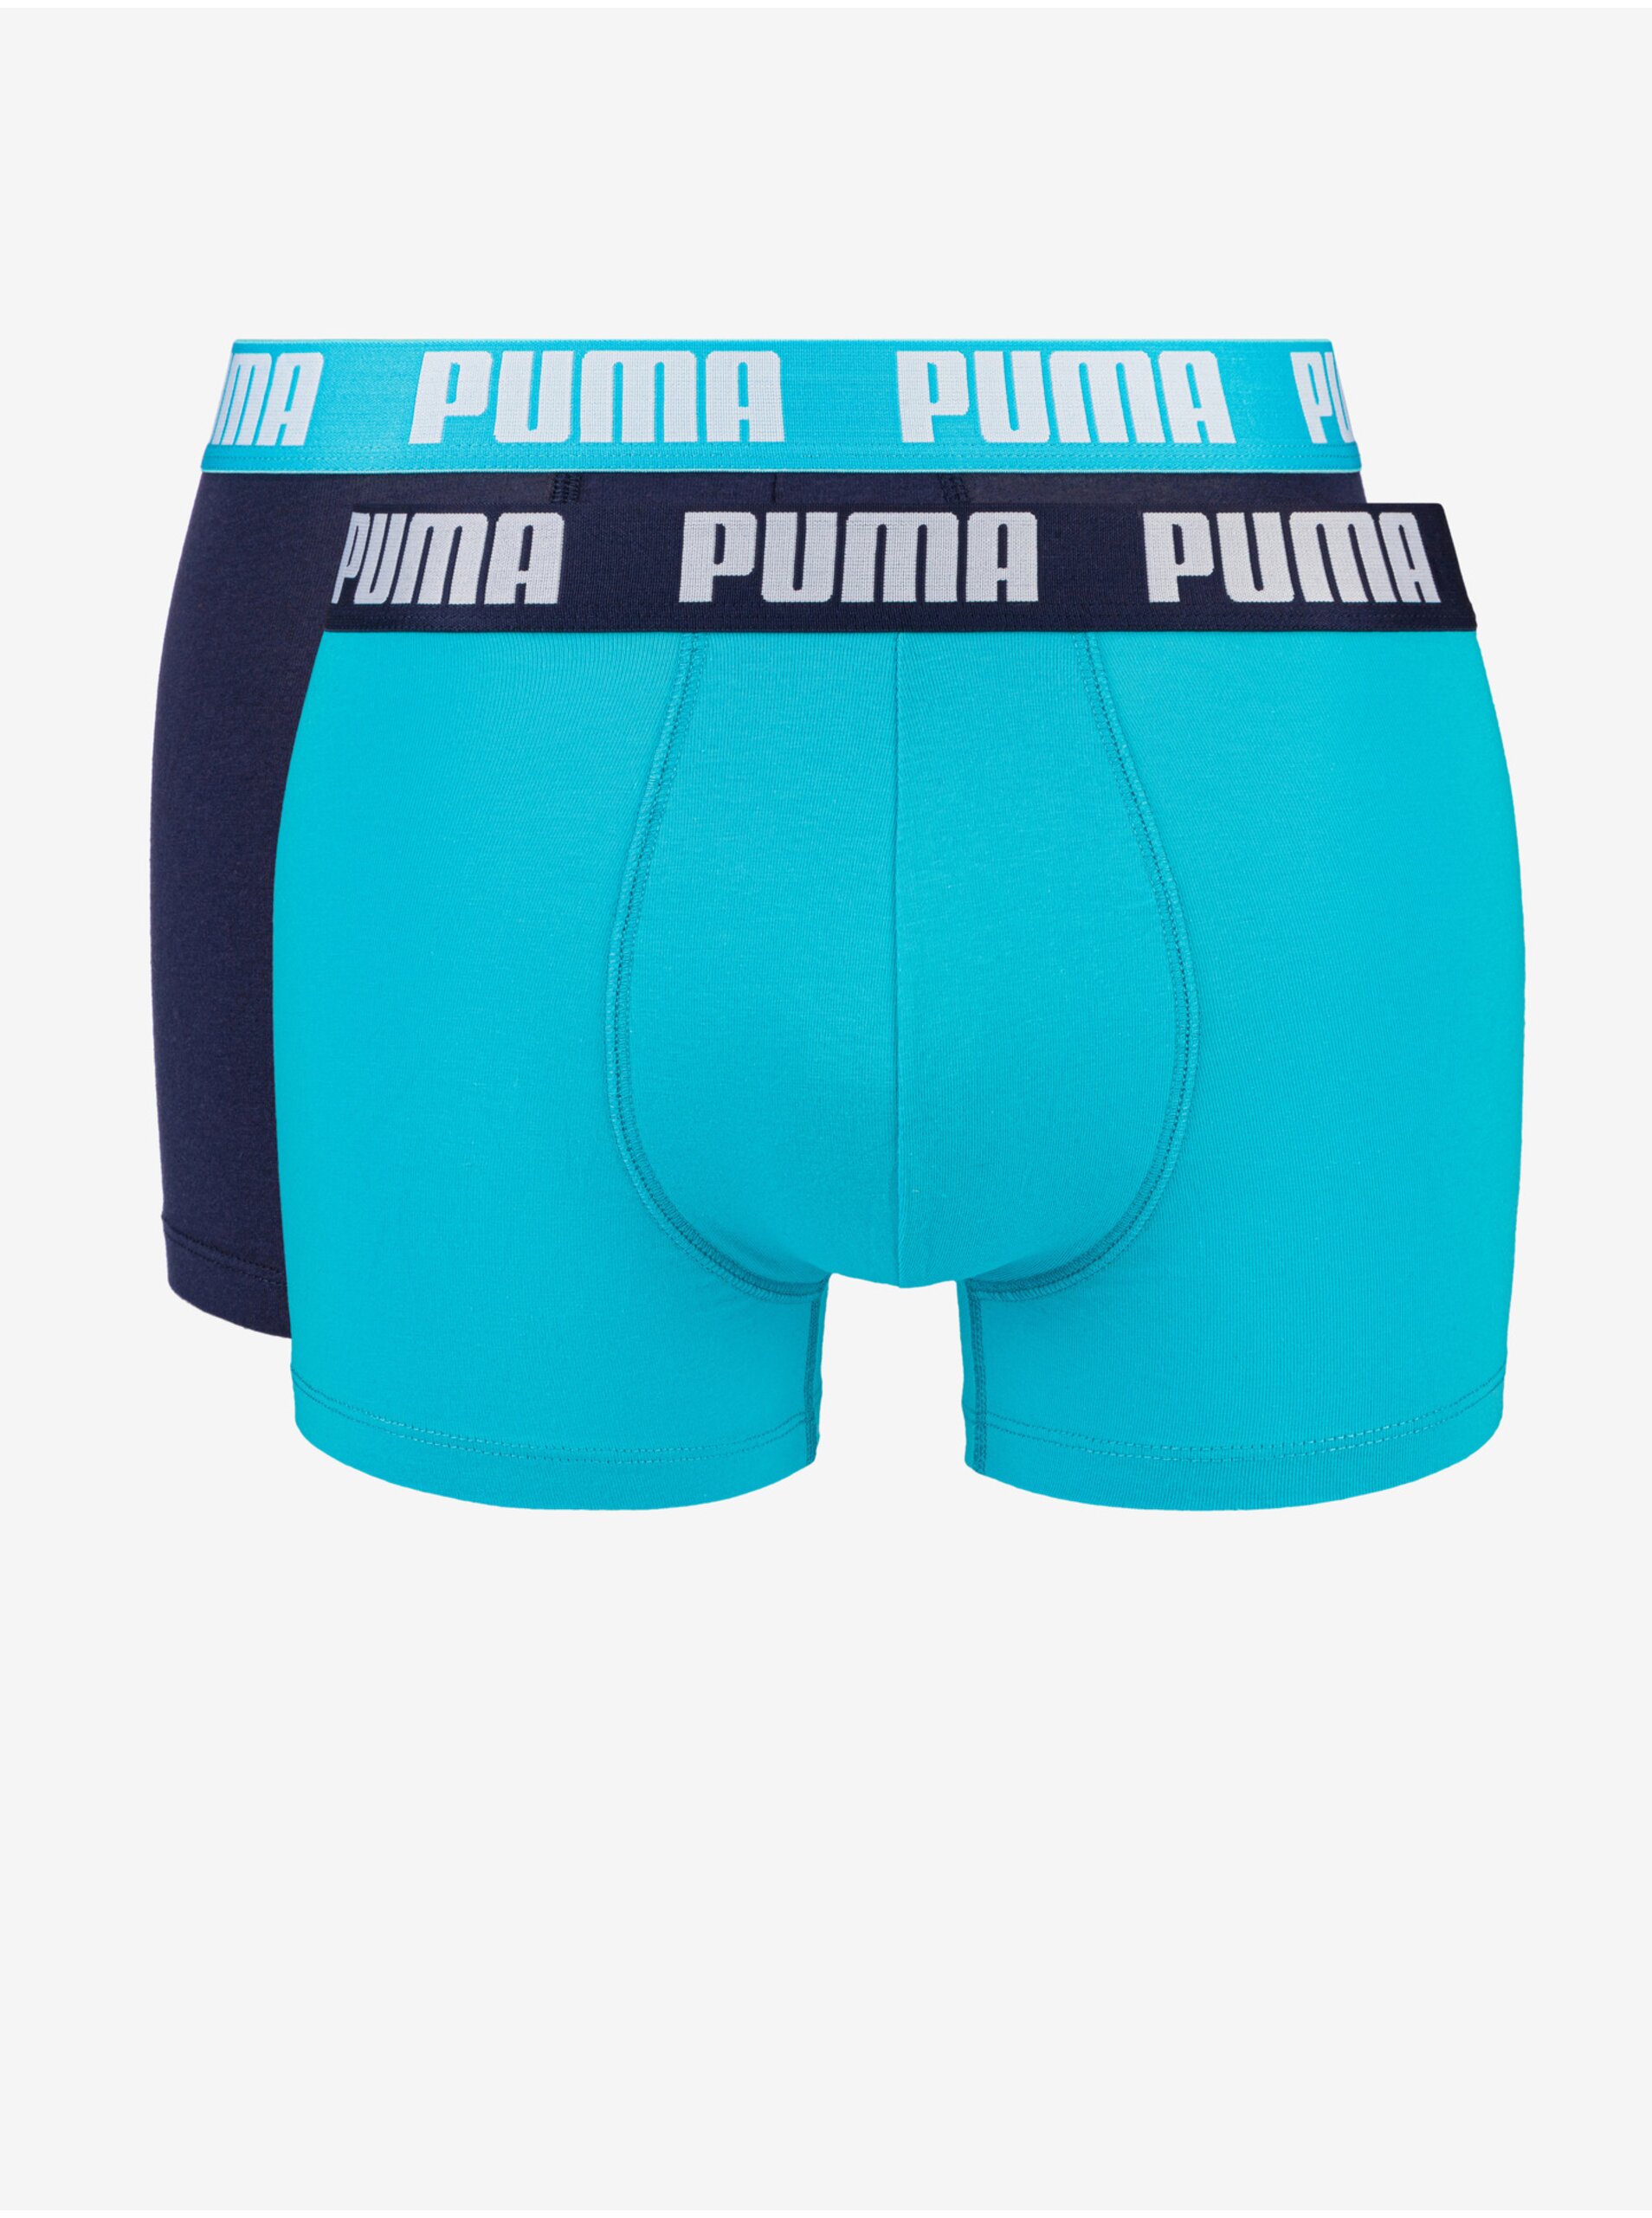 E-shop Sada dvou pánských boxerek v tmavě modré a světle modré barvě Puma